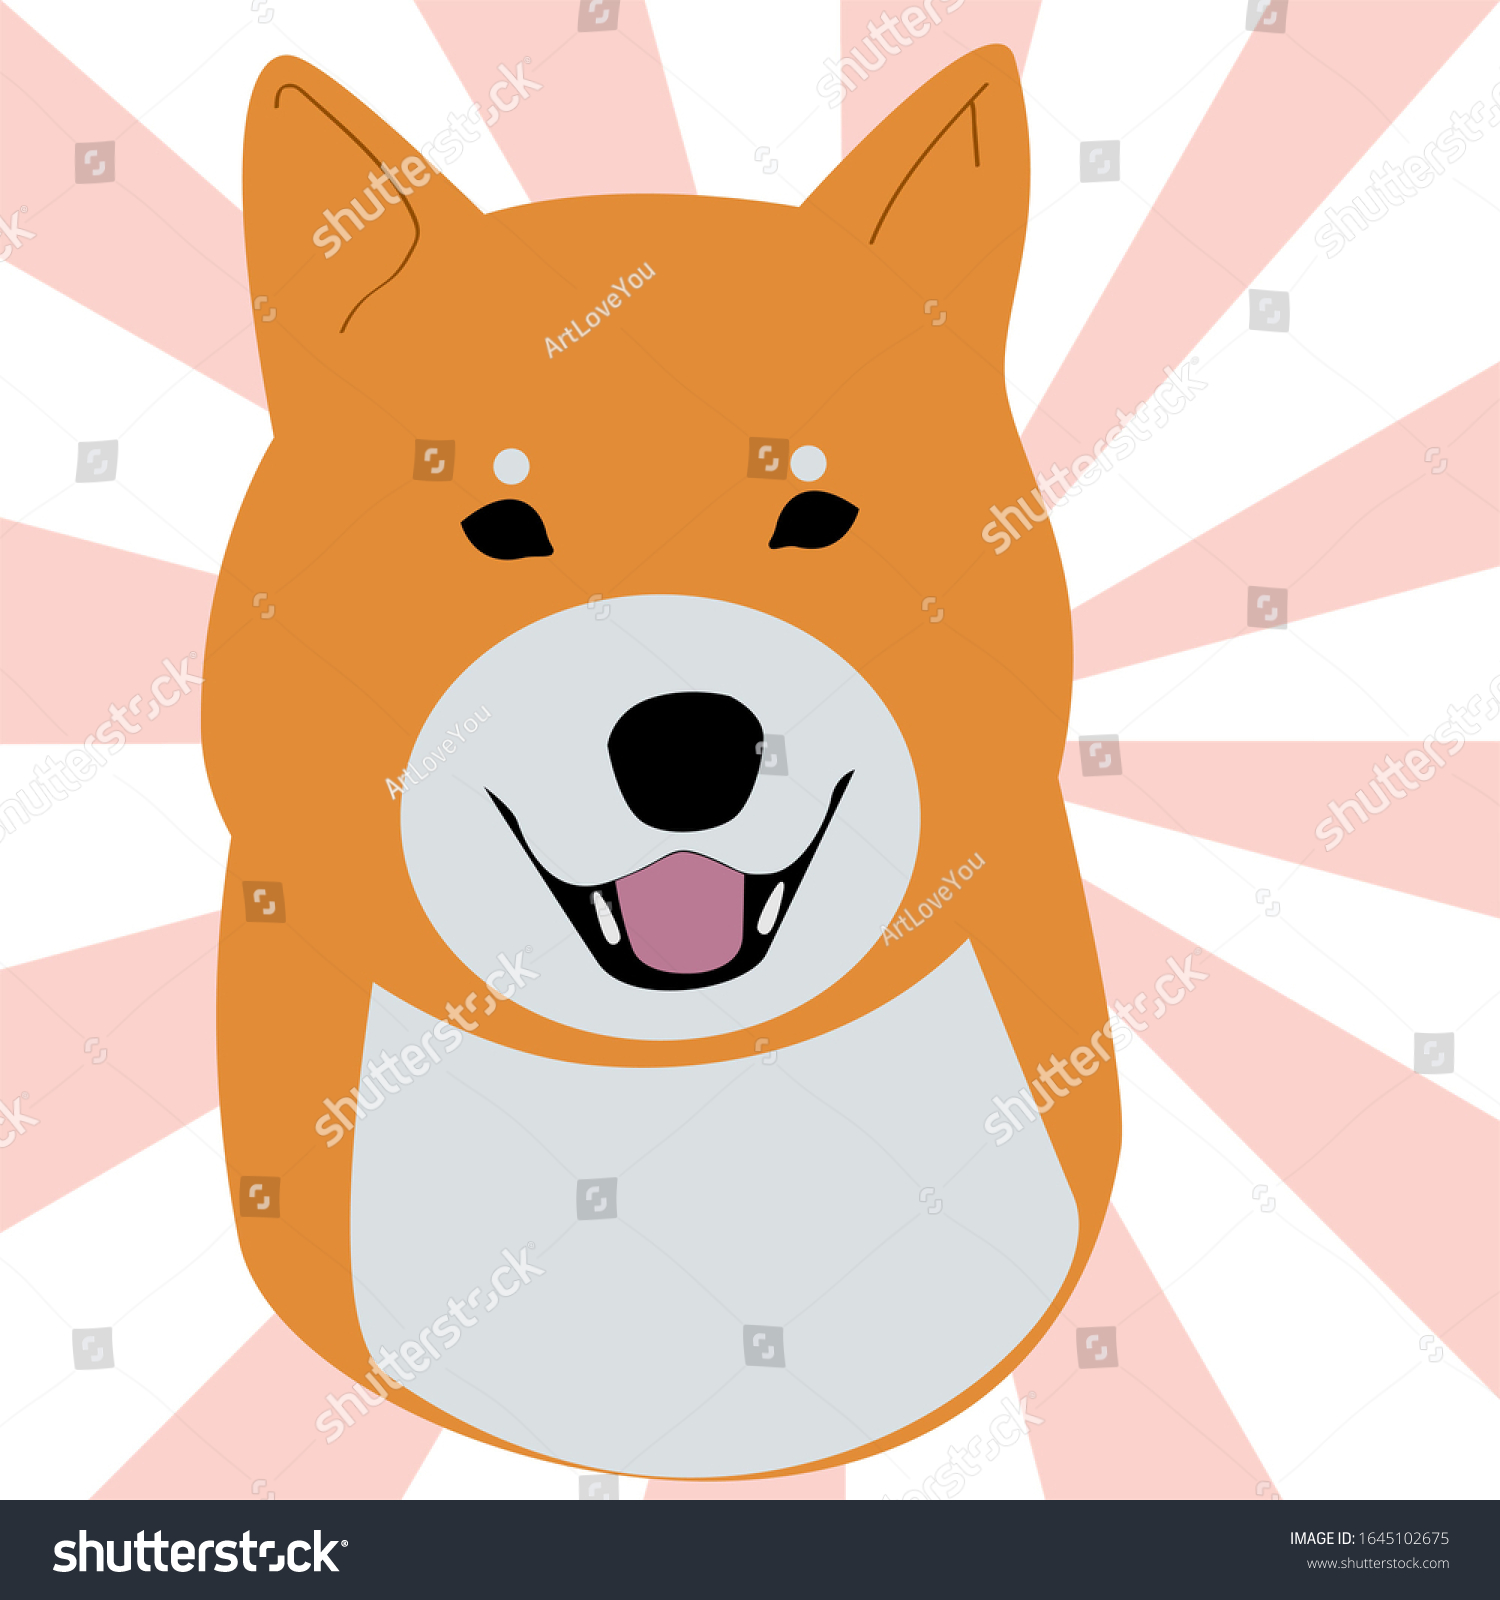 Shiba Inu Background Japanese Flag Stock Illustration 1645102675 ...